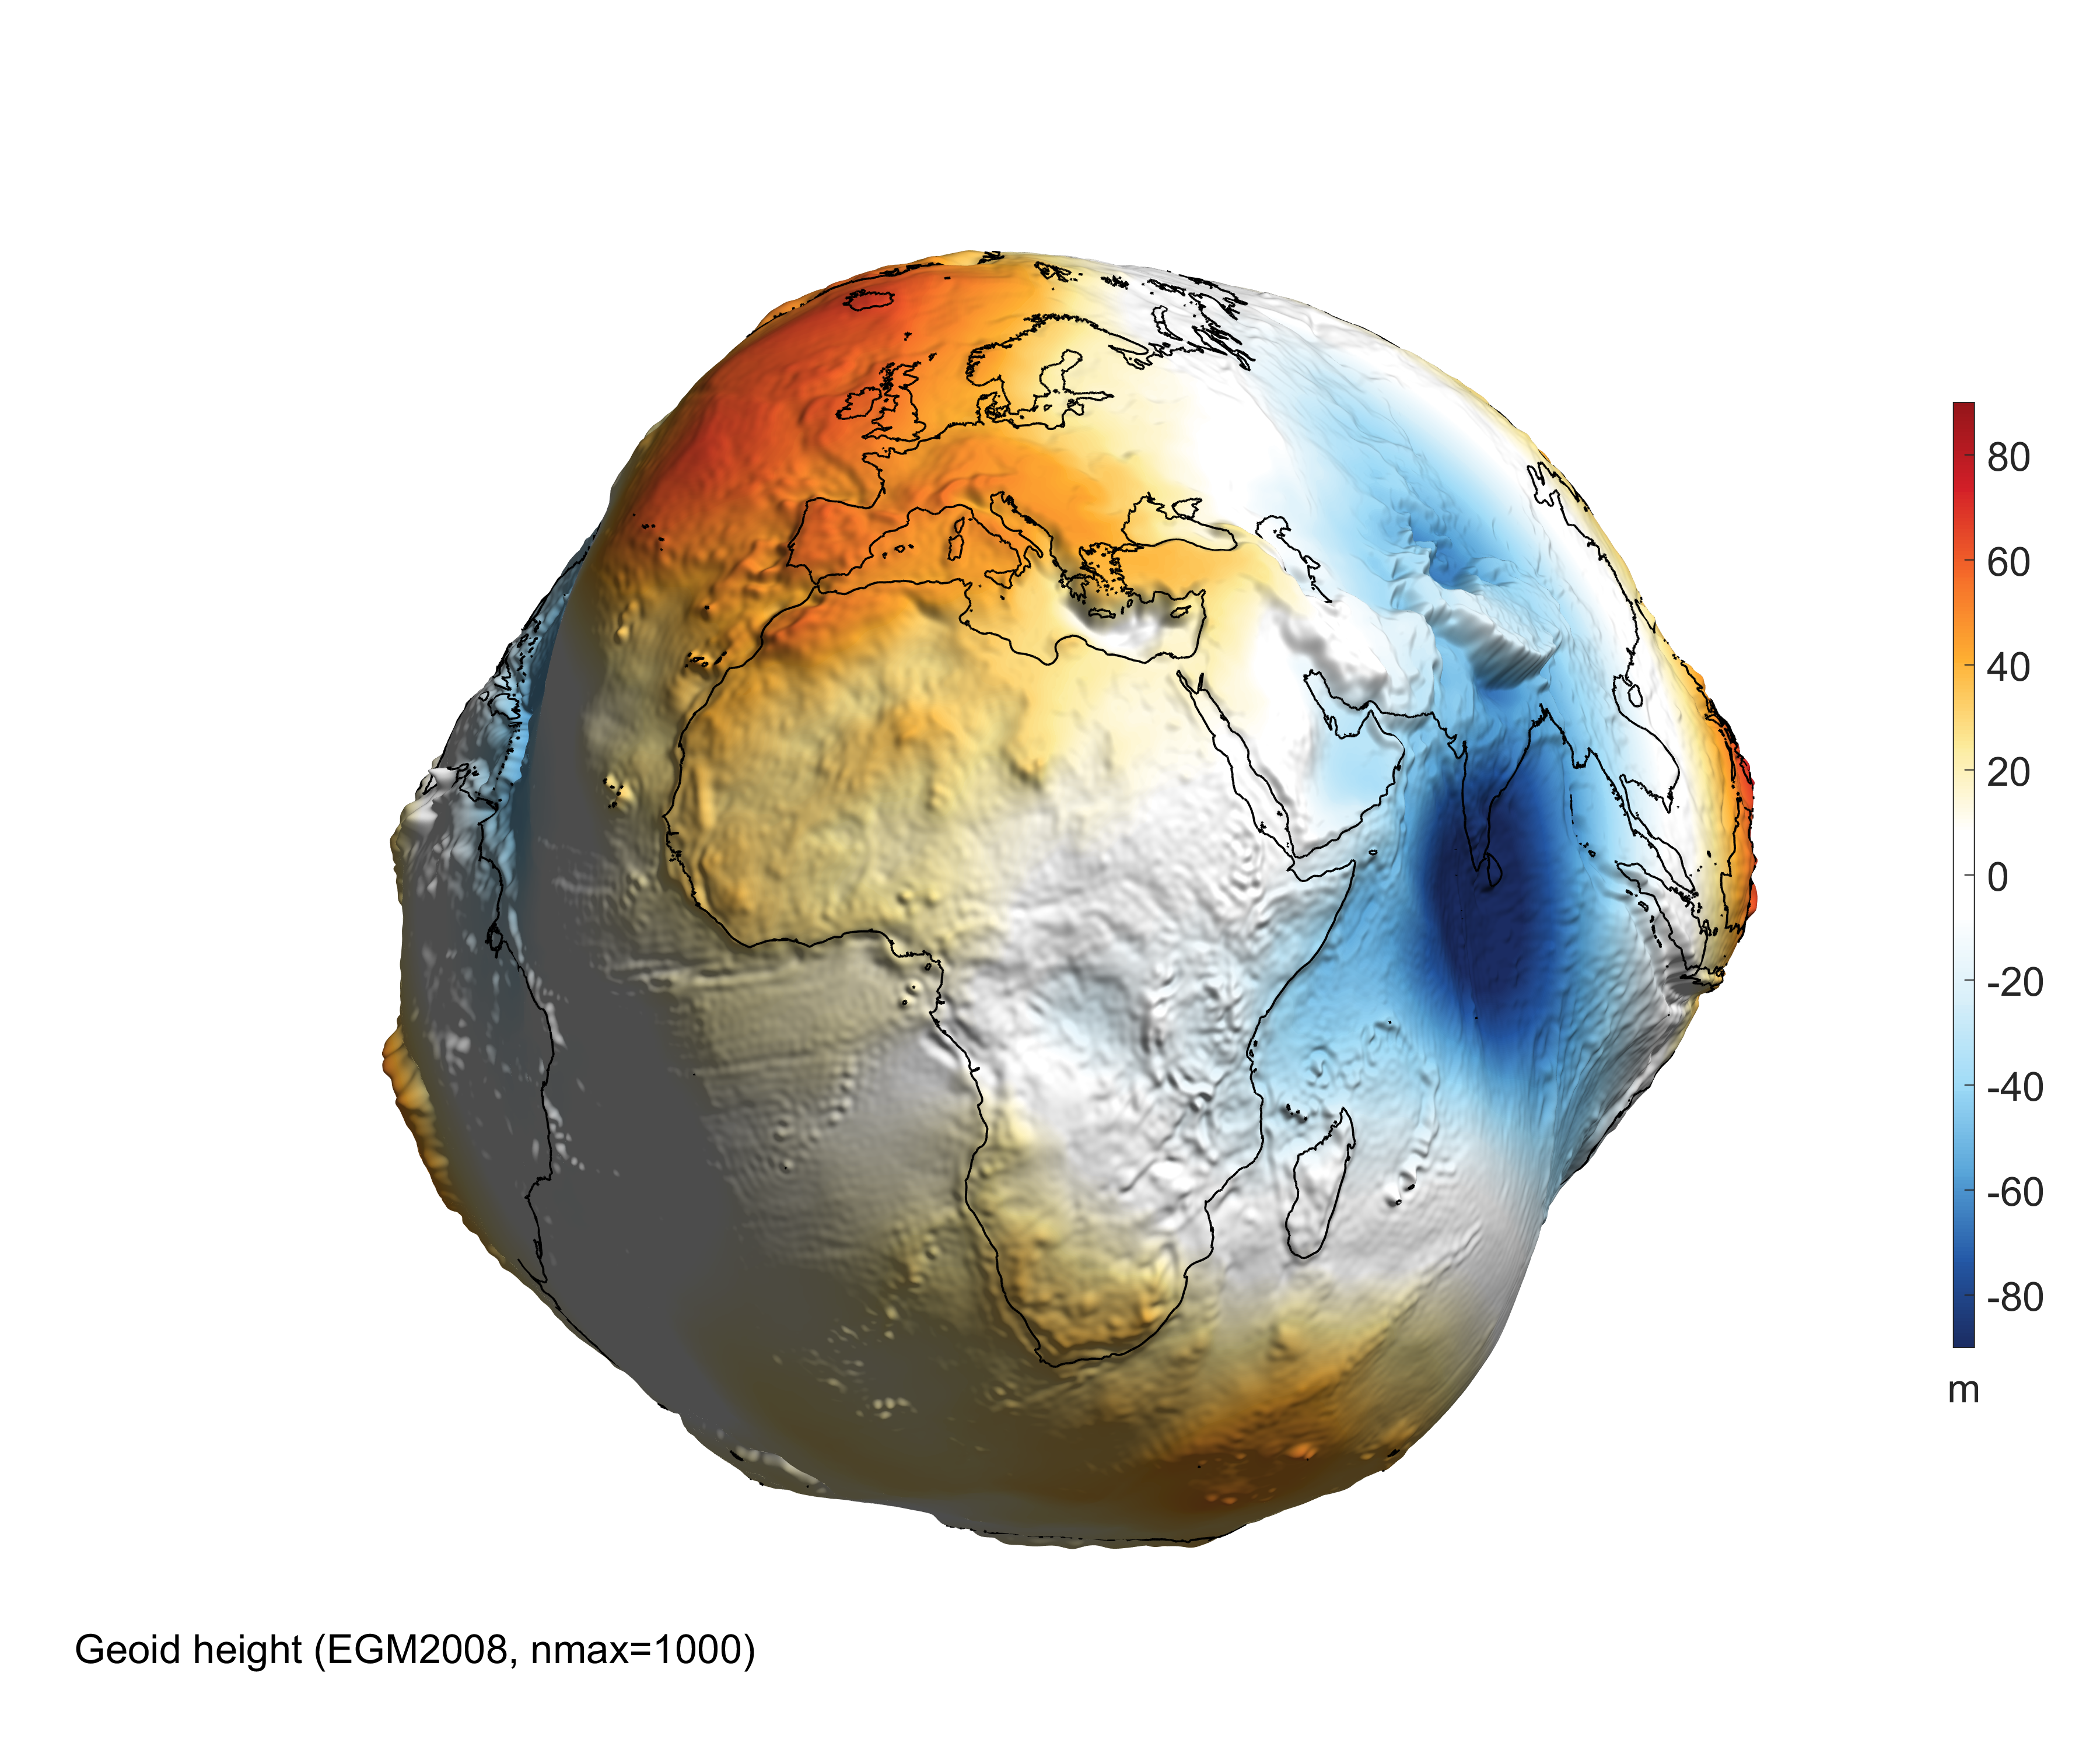 Dünya'nın geoid yüksekliği, kütleçekim bozukluğu ve kütleçekim meyili dikkate alınarak MATLAB'da modellenen 3 boyutlu Dünya gösterimi. (Görsel: Bezdek A, Sebera J, 2013)